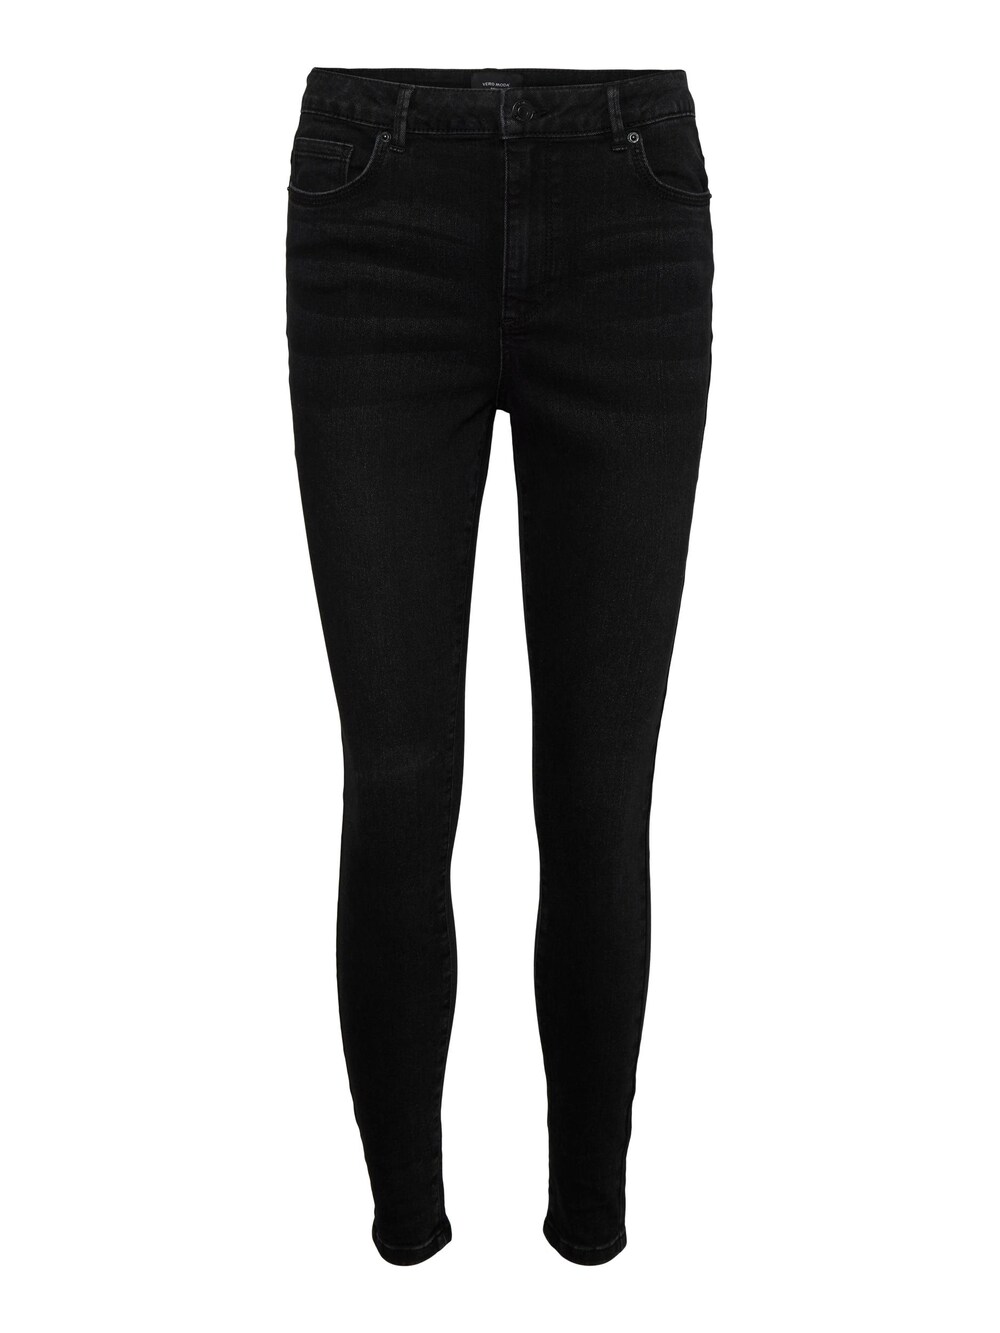 Узкие джинсы VERO MODA SOPHIA, черный блузка sophia с цветочным принтом vero moda черный